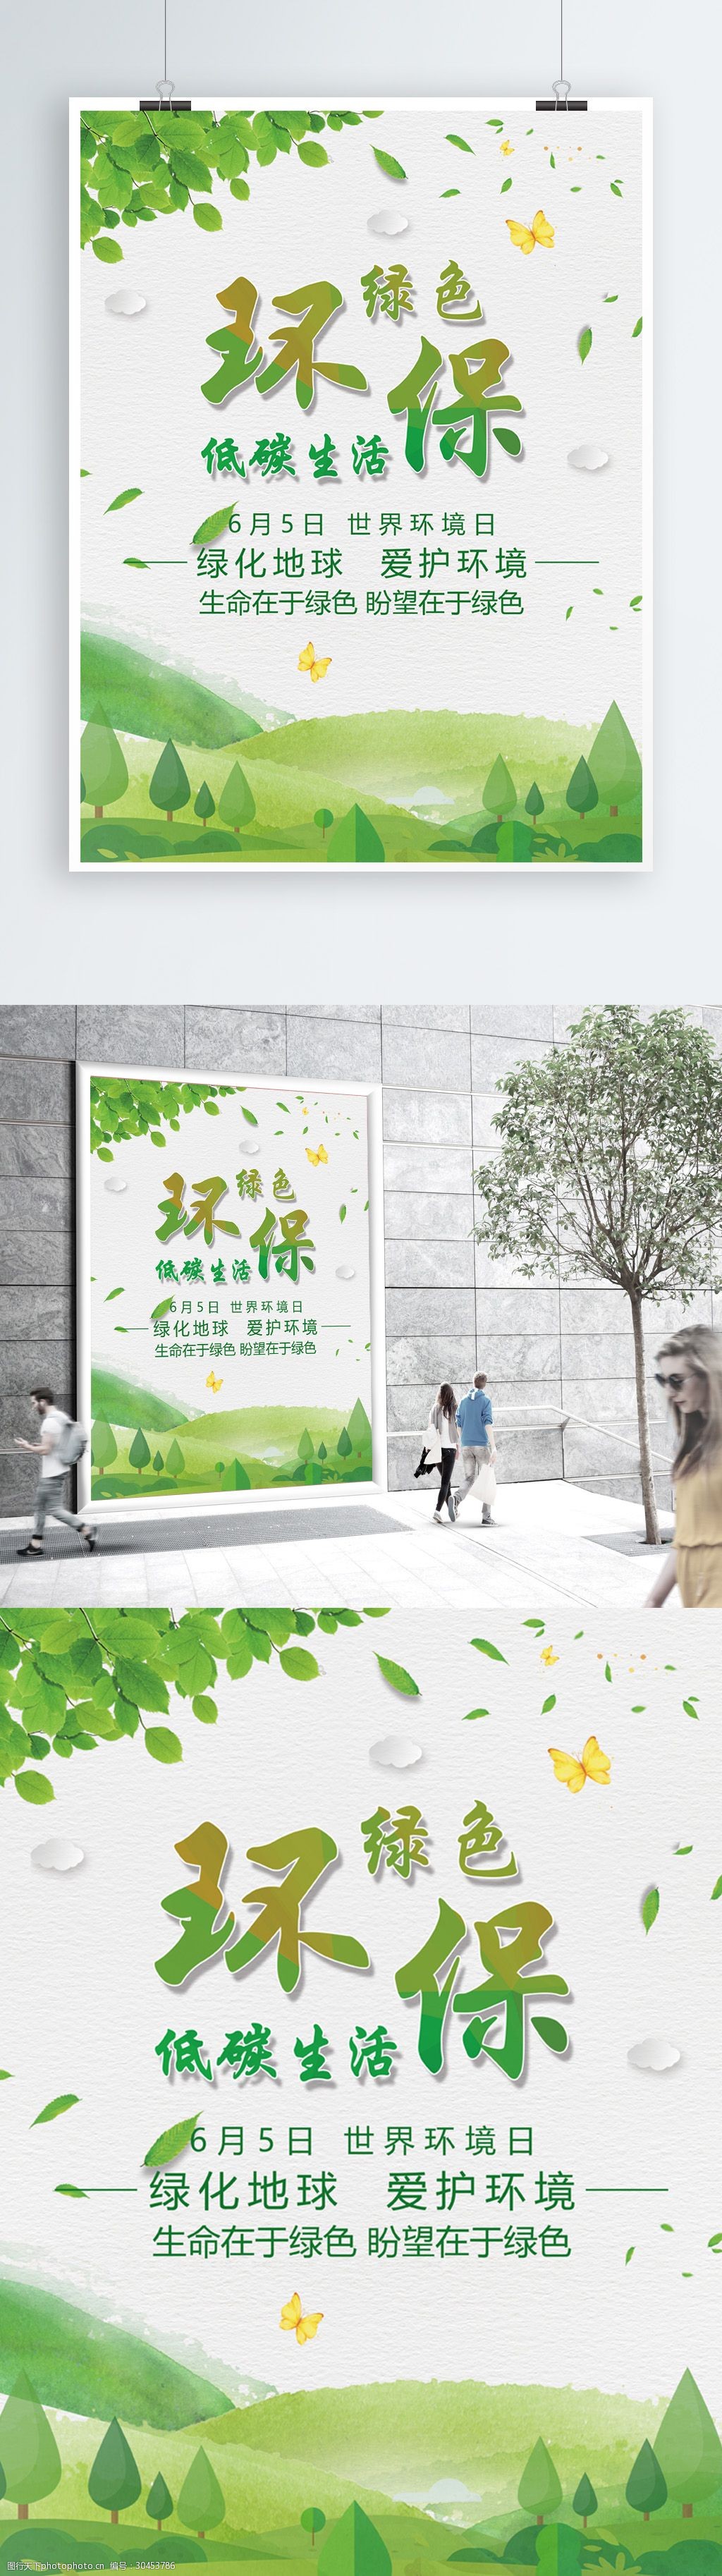 关键词:绿色清新保护环境公益海报模板 环保 低碳生活 爱护环境 公益